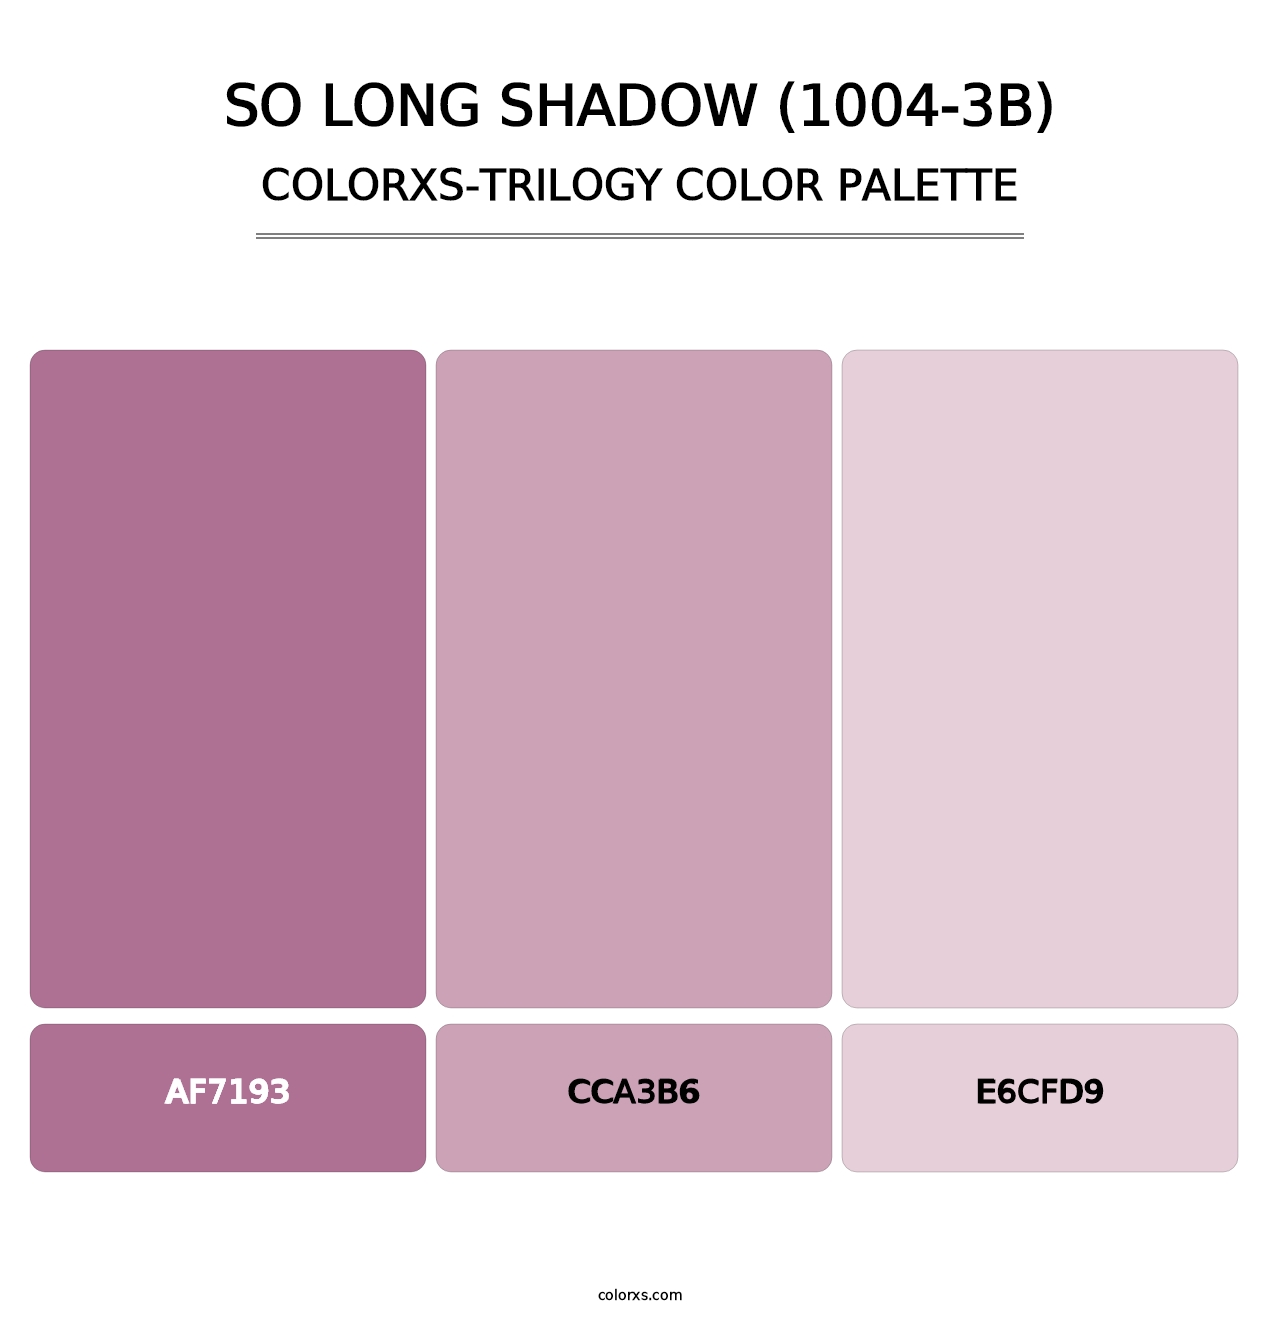 So Long Shadow (1004-3B) - Colorxs Trilogy Palette